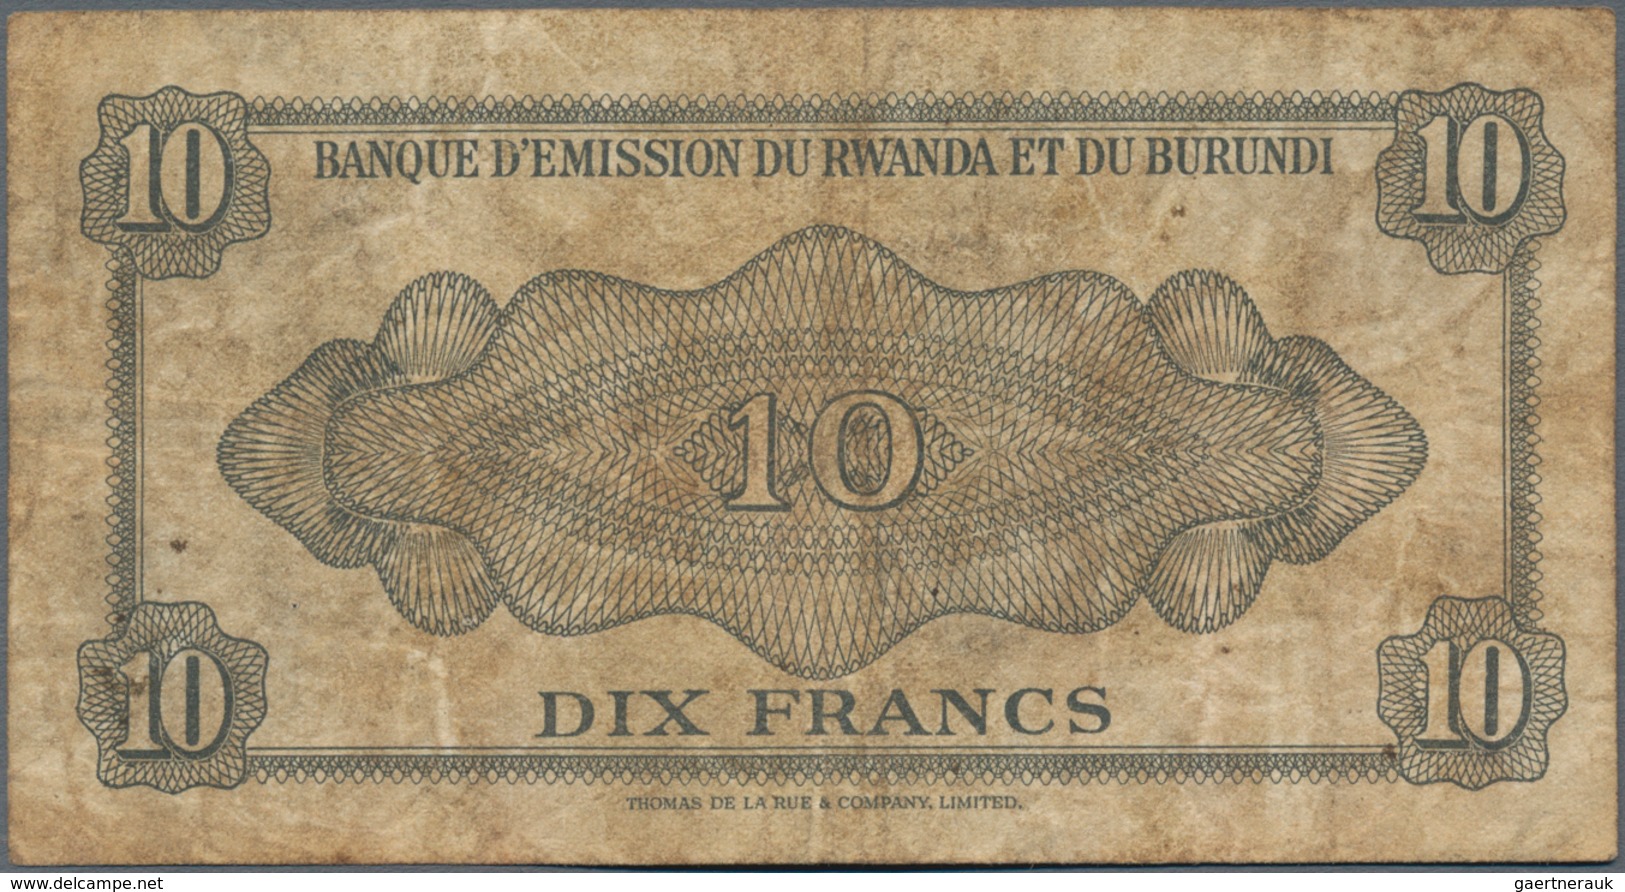 Burundi: Banque D'Émission Du Rwanda Et Du Burundi (Banque Du Royaume Du Burundi) 10 Francs 1960, P. - Burundi